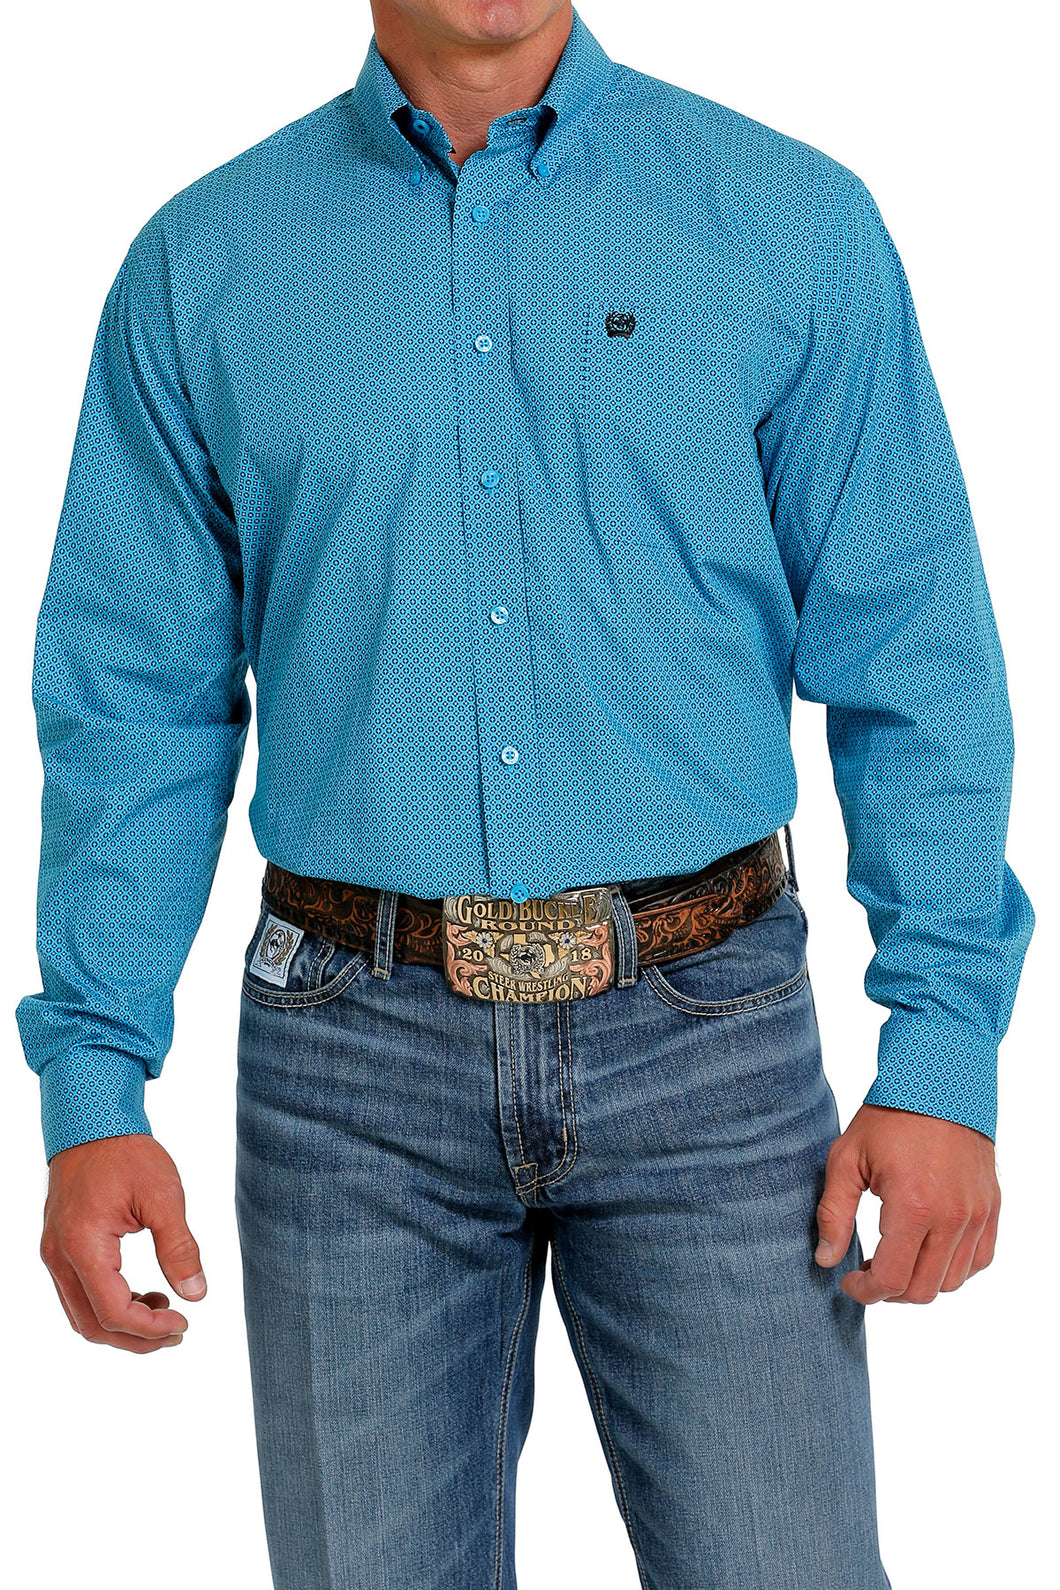 Pard's Western Shop Cinch Men's Turquoise Geometric Print Button-Down Shirt